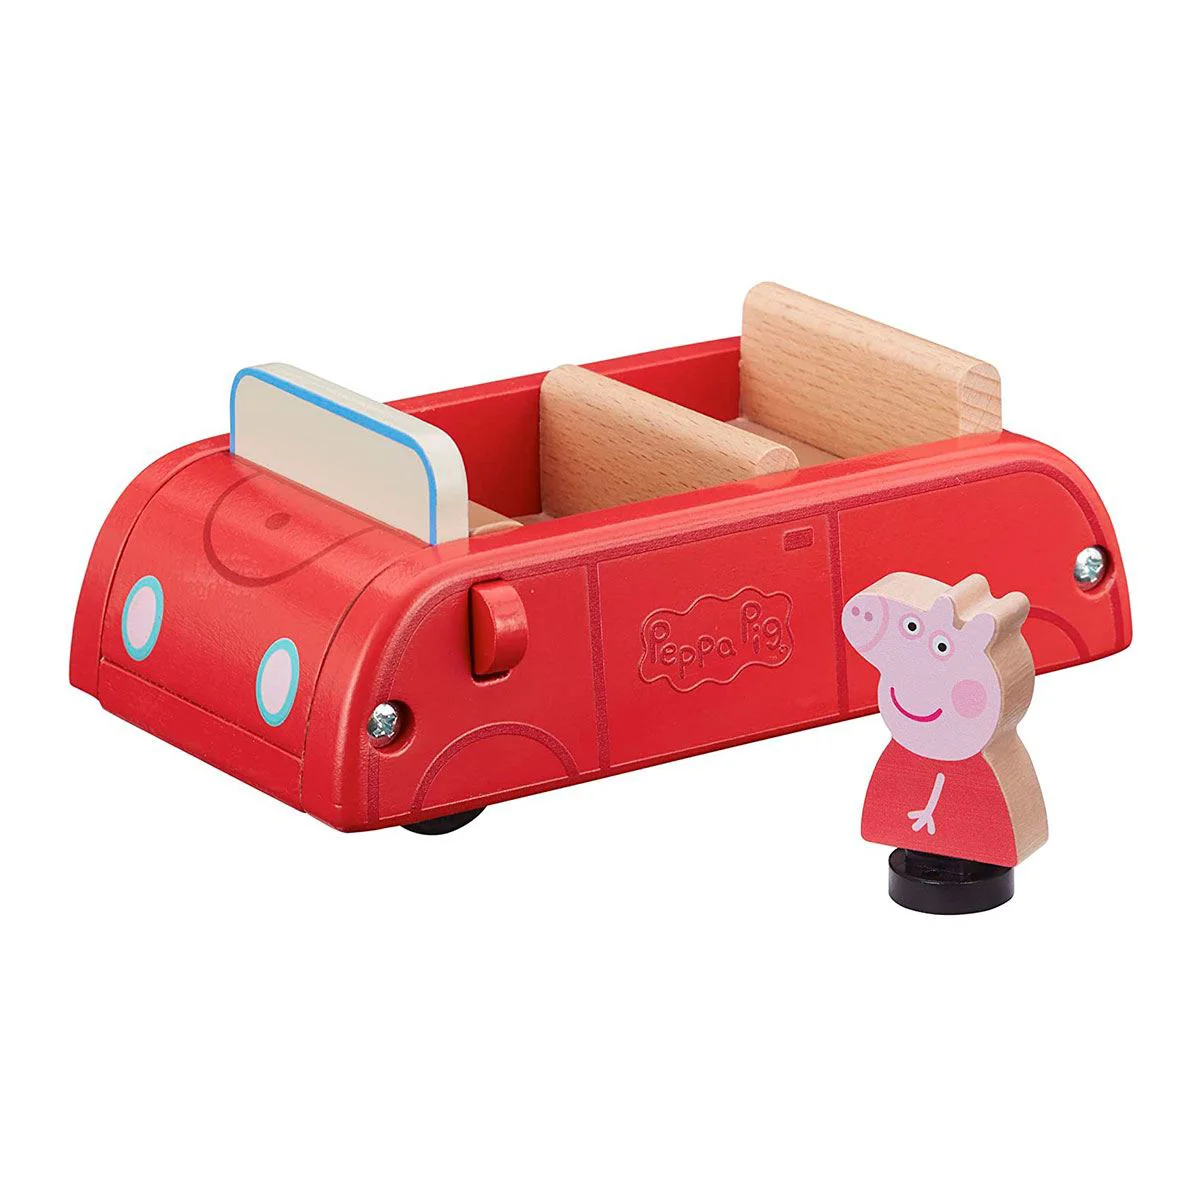 Деревянный игровой набор Peppa Pig Машинка и фигурка